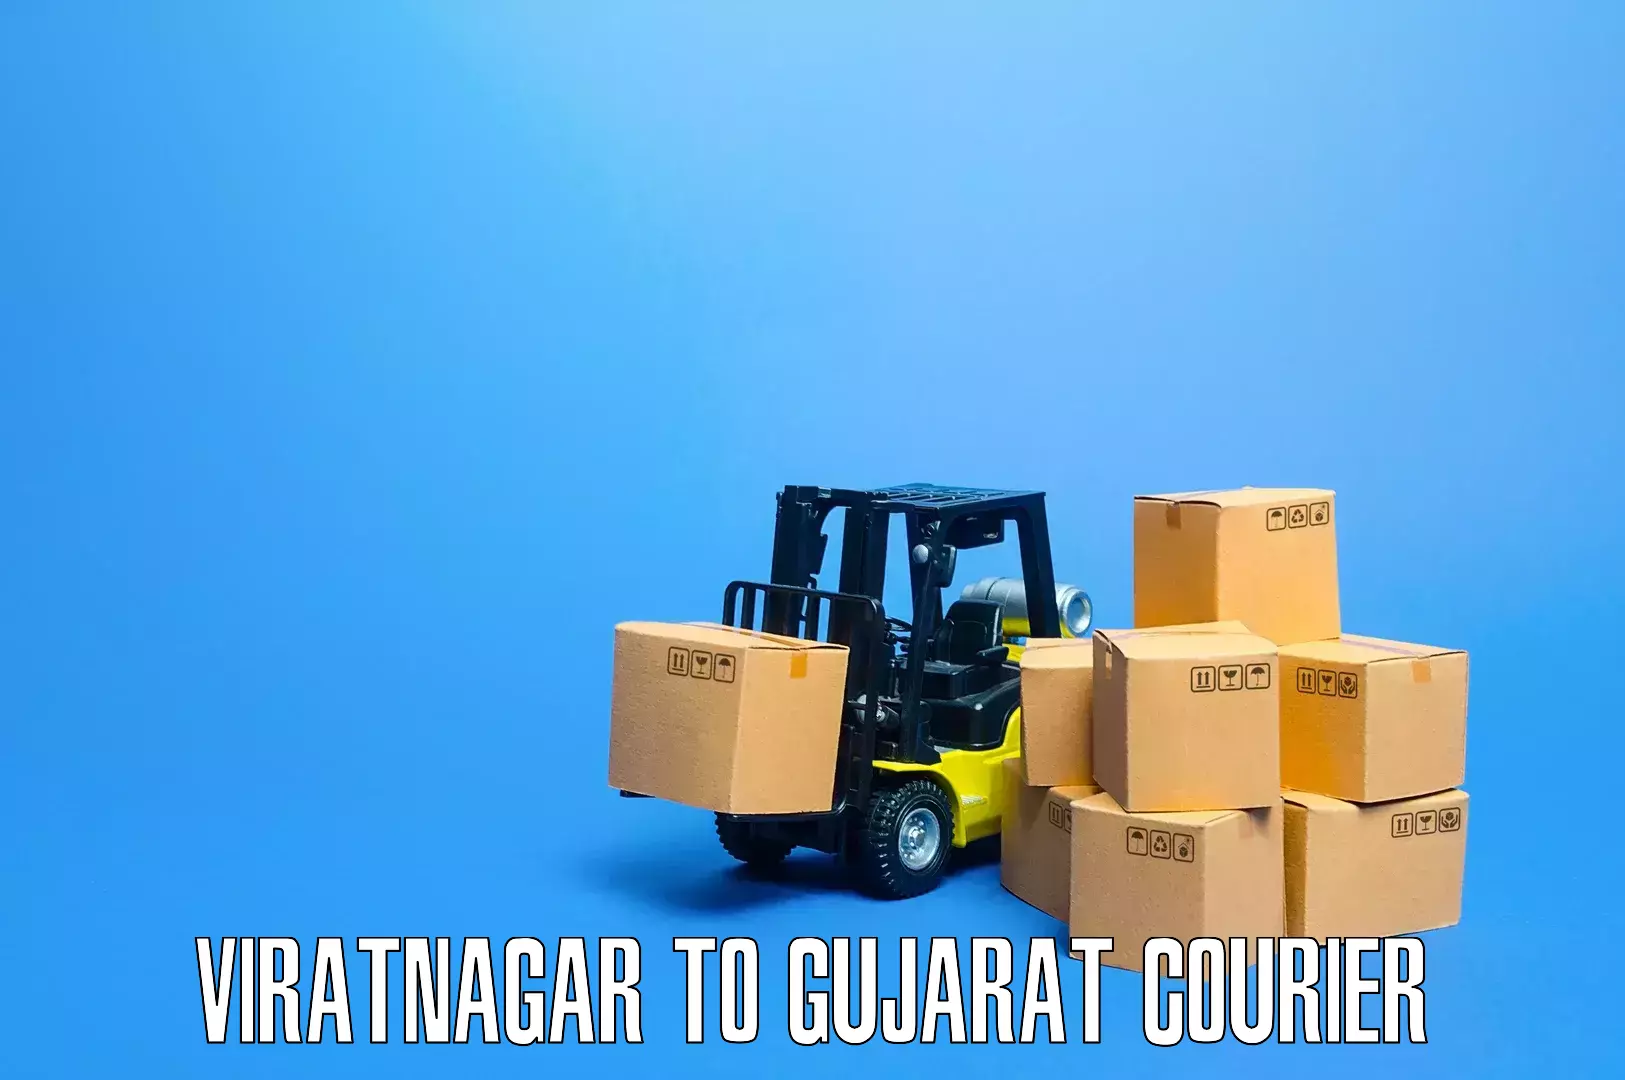 Skilled furniture transport in Viratnagar to Kalavad